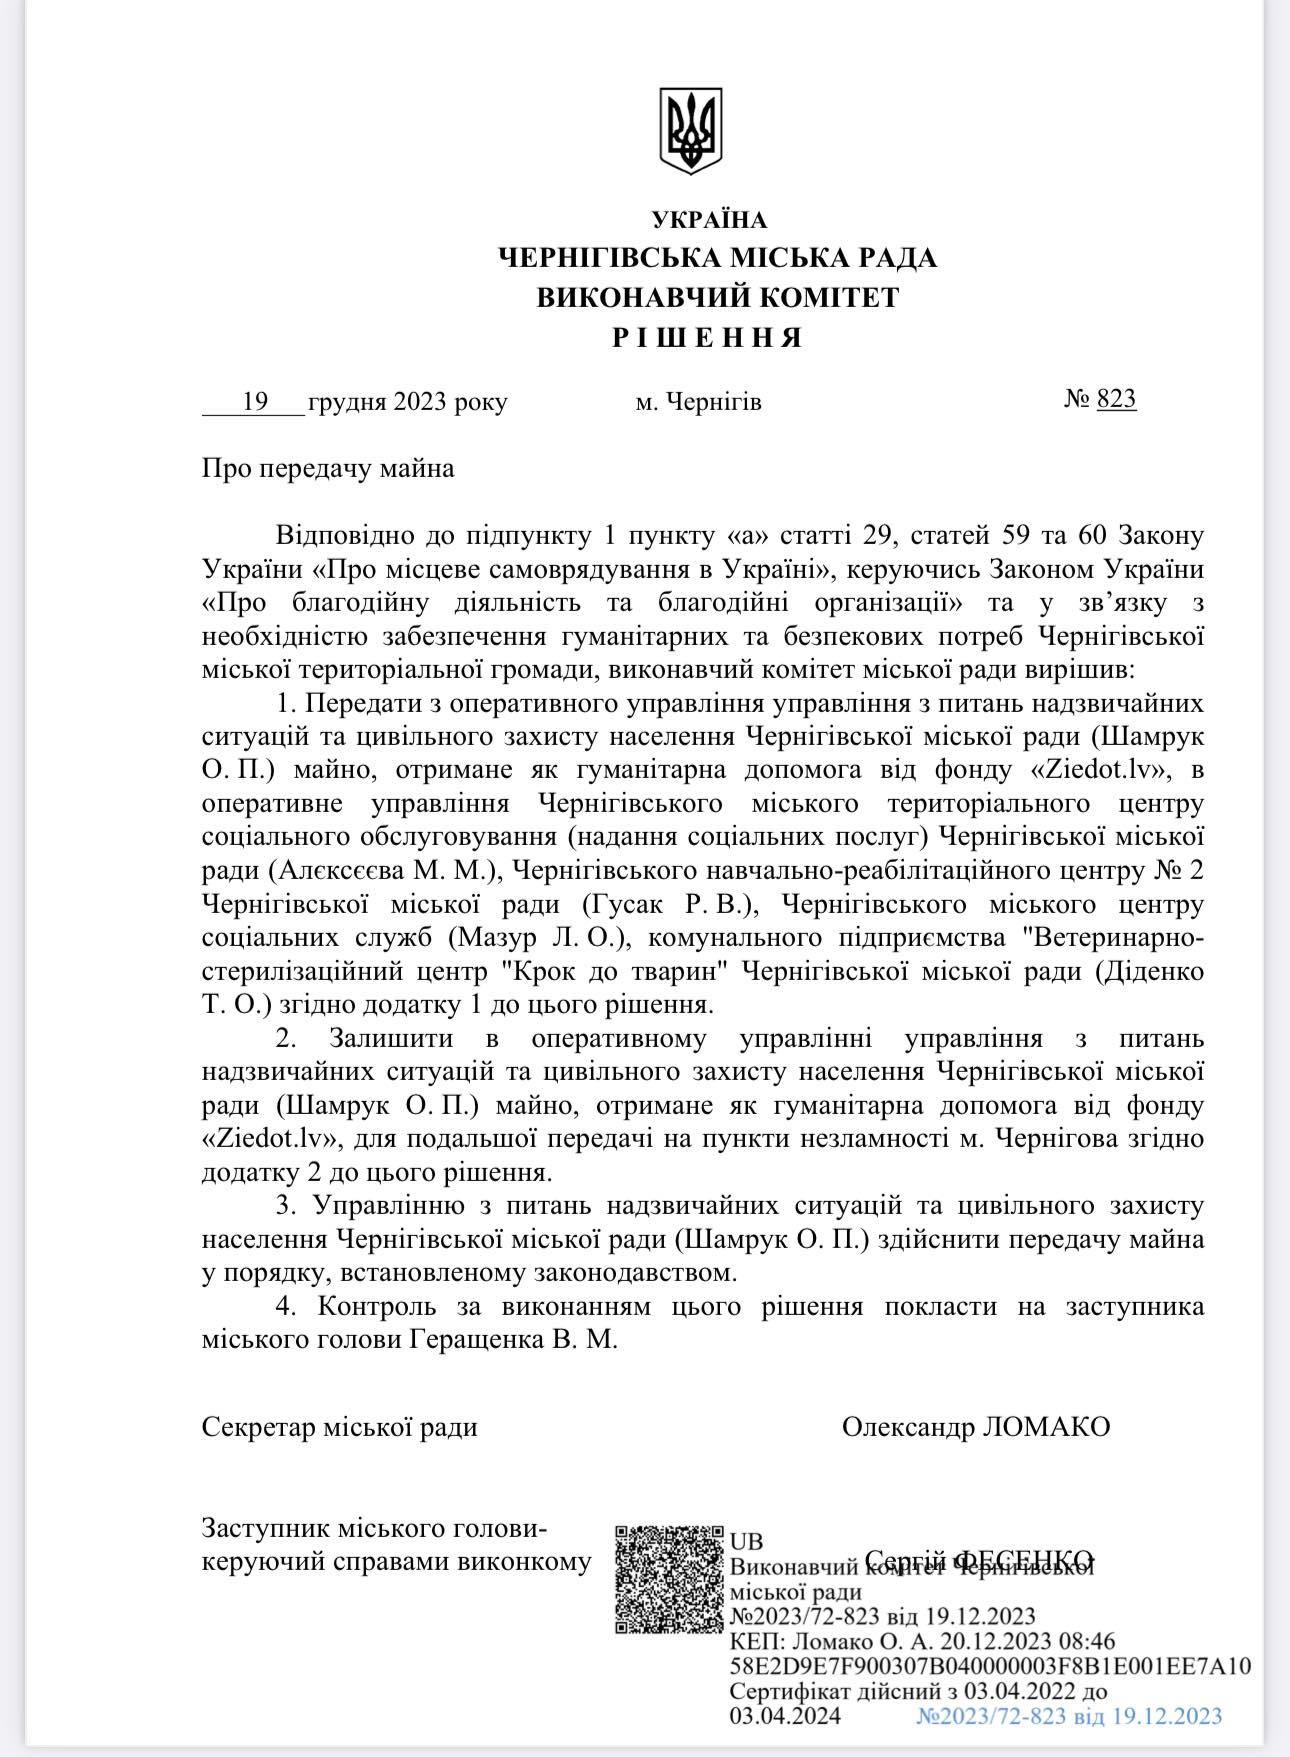 «Час Чернігівський» вивчив опис гумдопомоги, який оприлюднений у двох додатках рішення виконкому на сайті міської ради.